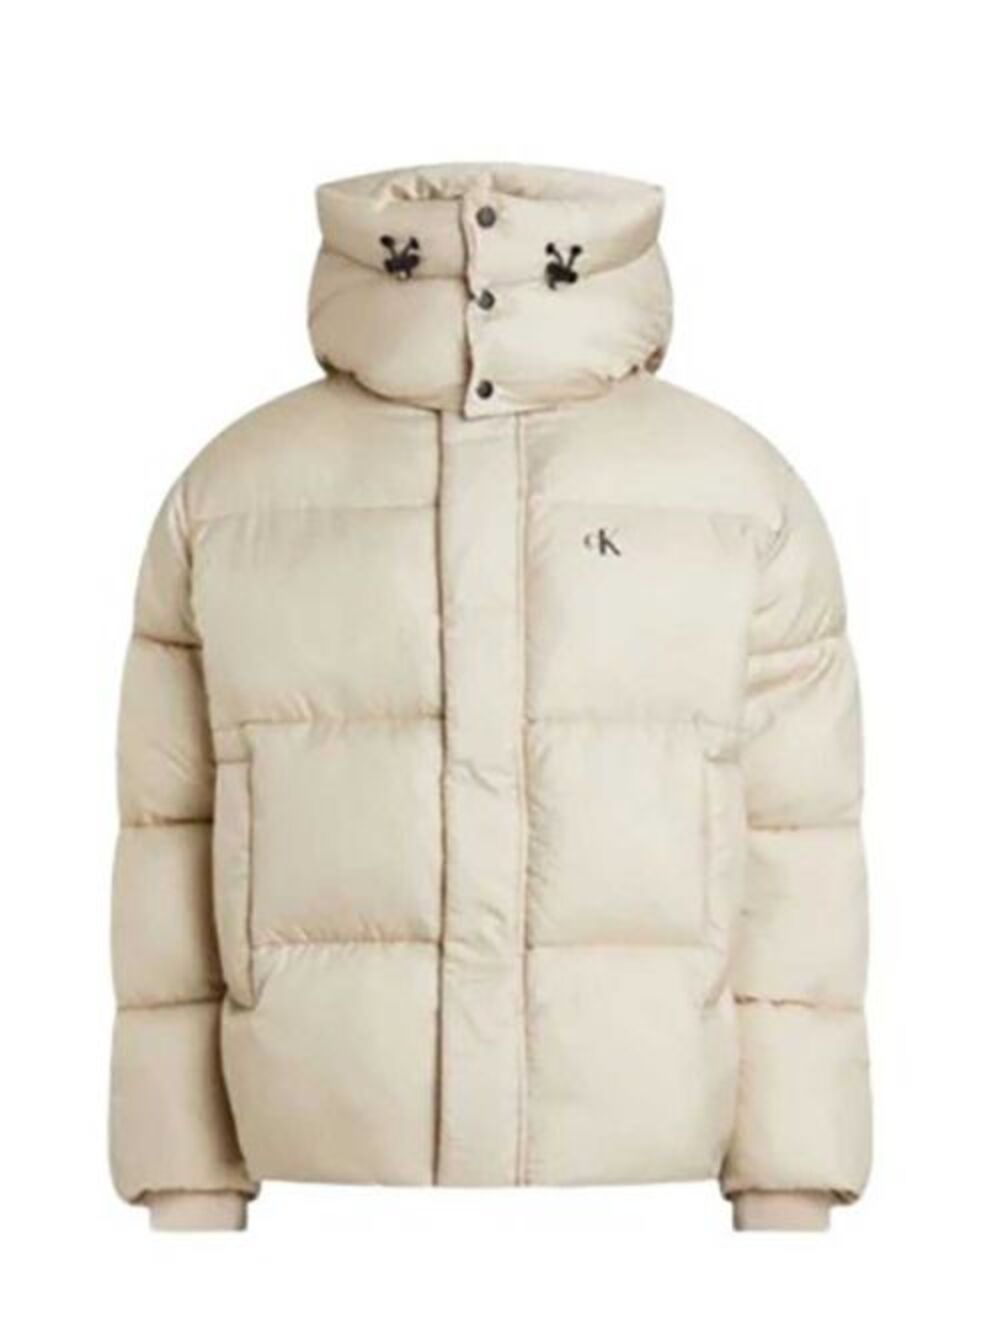 muske jakne za zimu 2023 04 Muške jakne za zimu: 7 najmodernijih modela, prema izboru naših stilista